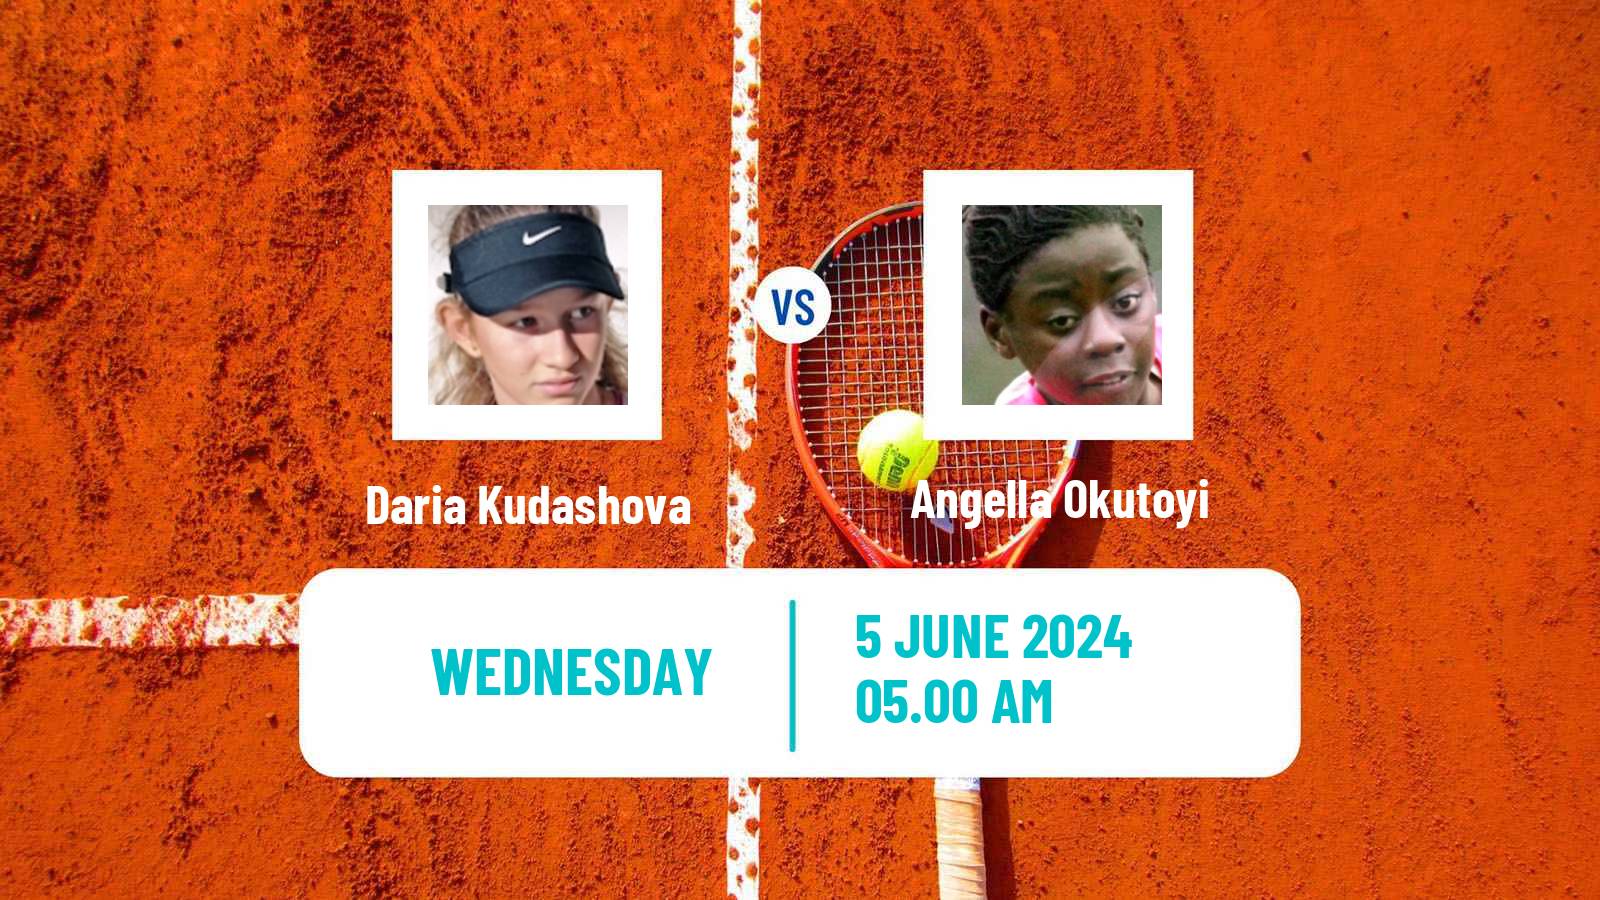 Tennis ITF W50 La Marsa Women Daria Kudashova - Angella Okutoyi